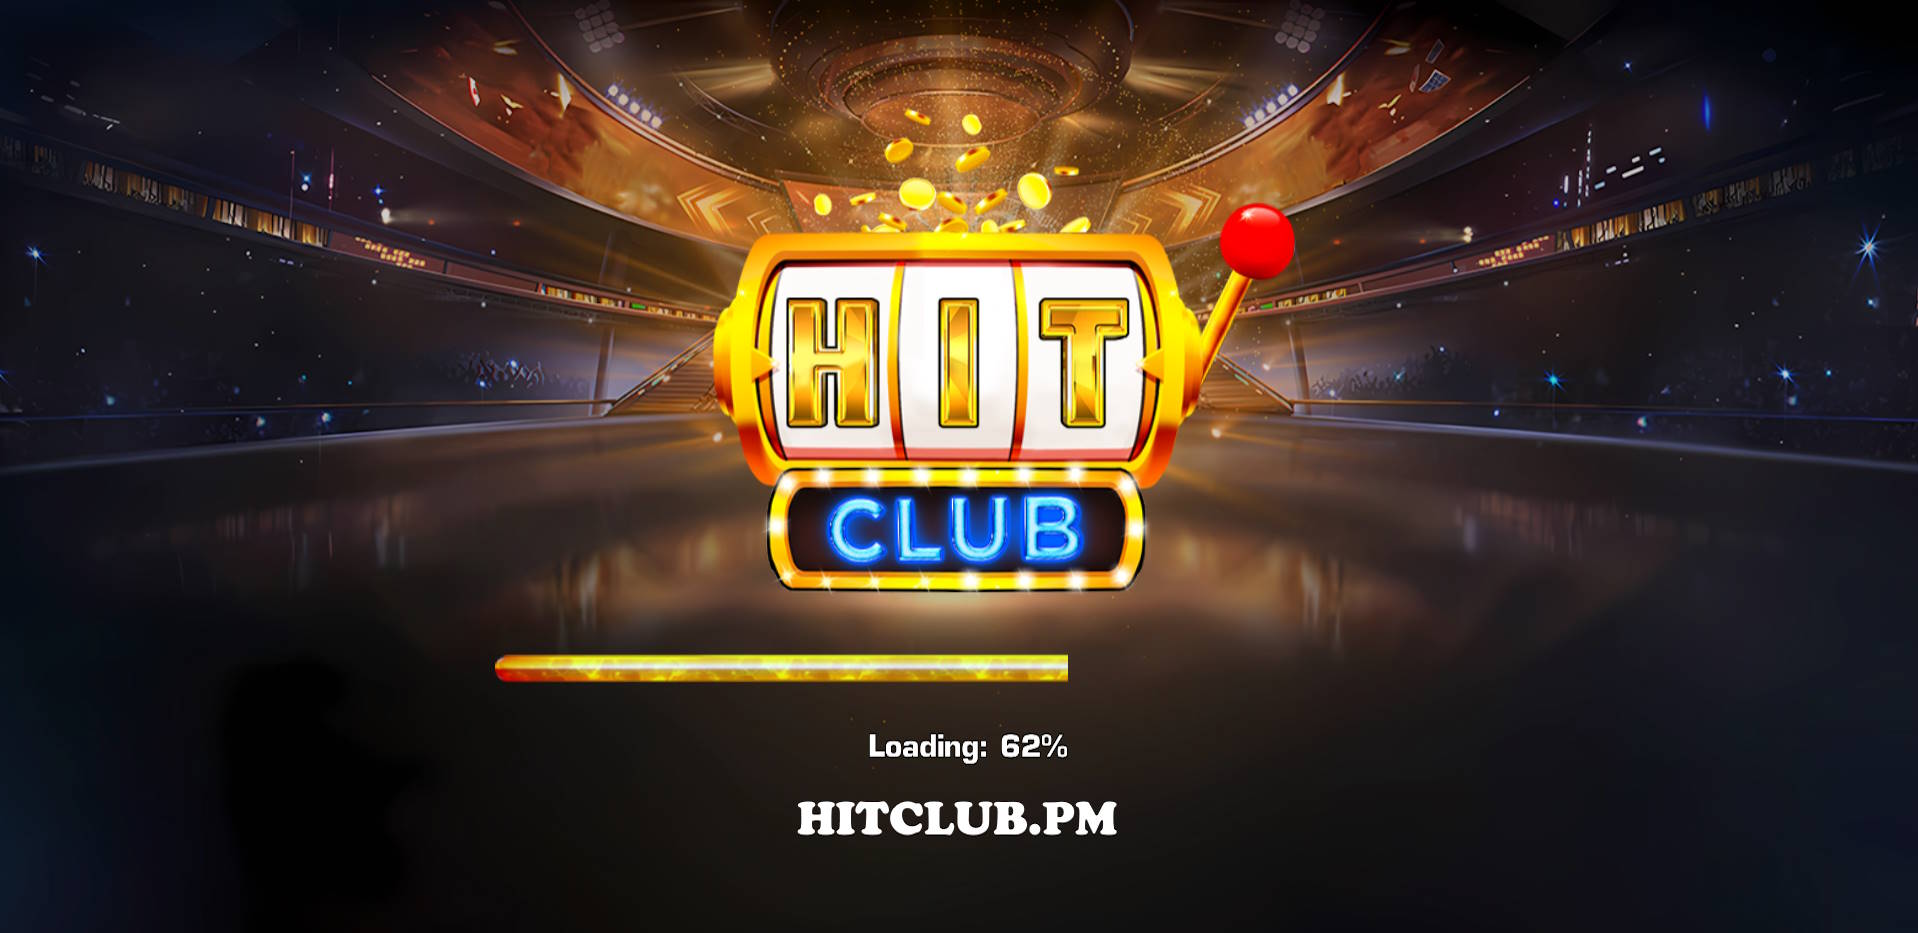 Giới thiệu cổng game Hit Club